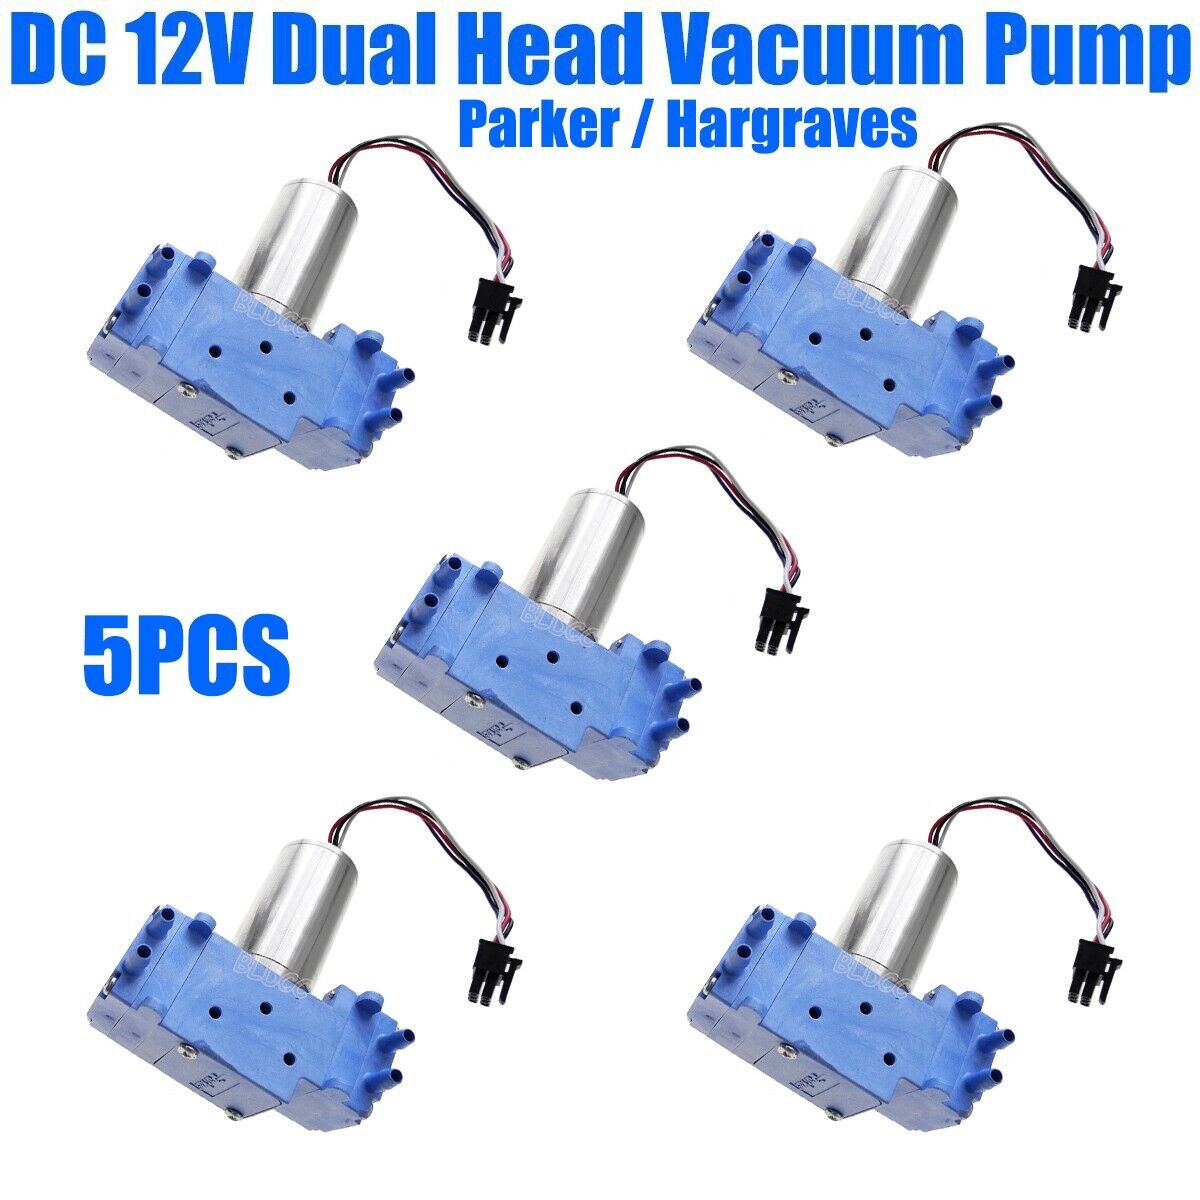 5PCS Parker / Hargraves Efficient Small Diaphragm Vacuum Pump Dual Head Air Pump